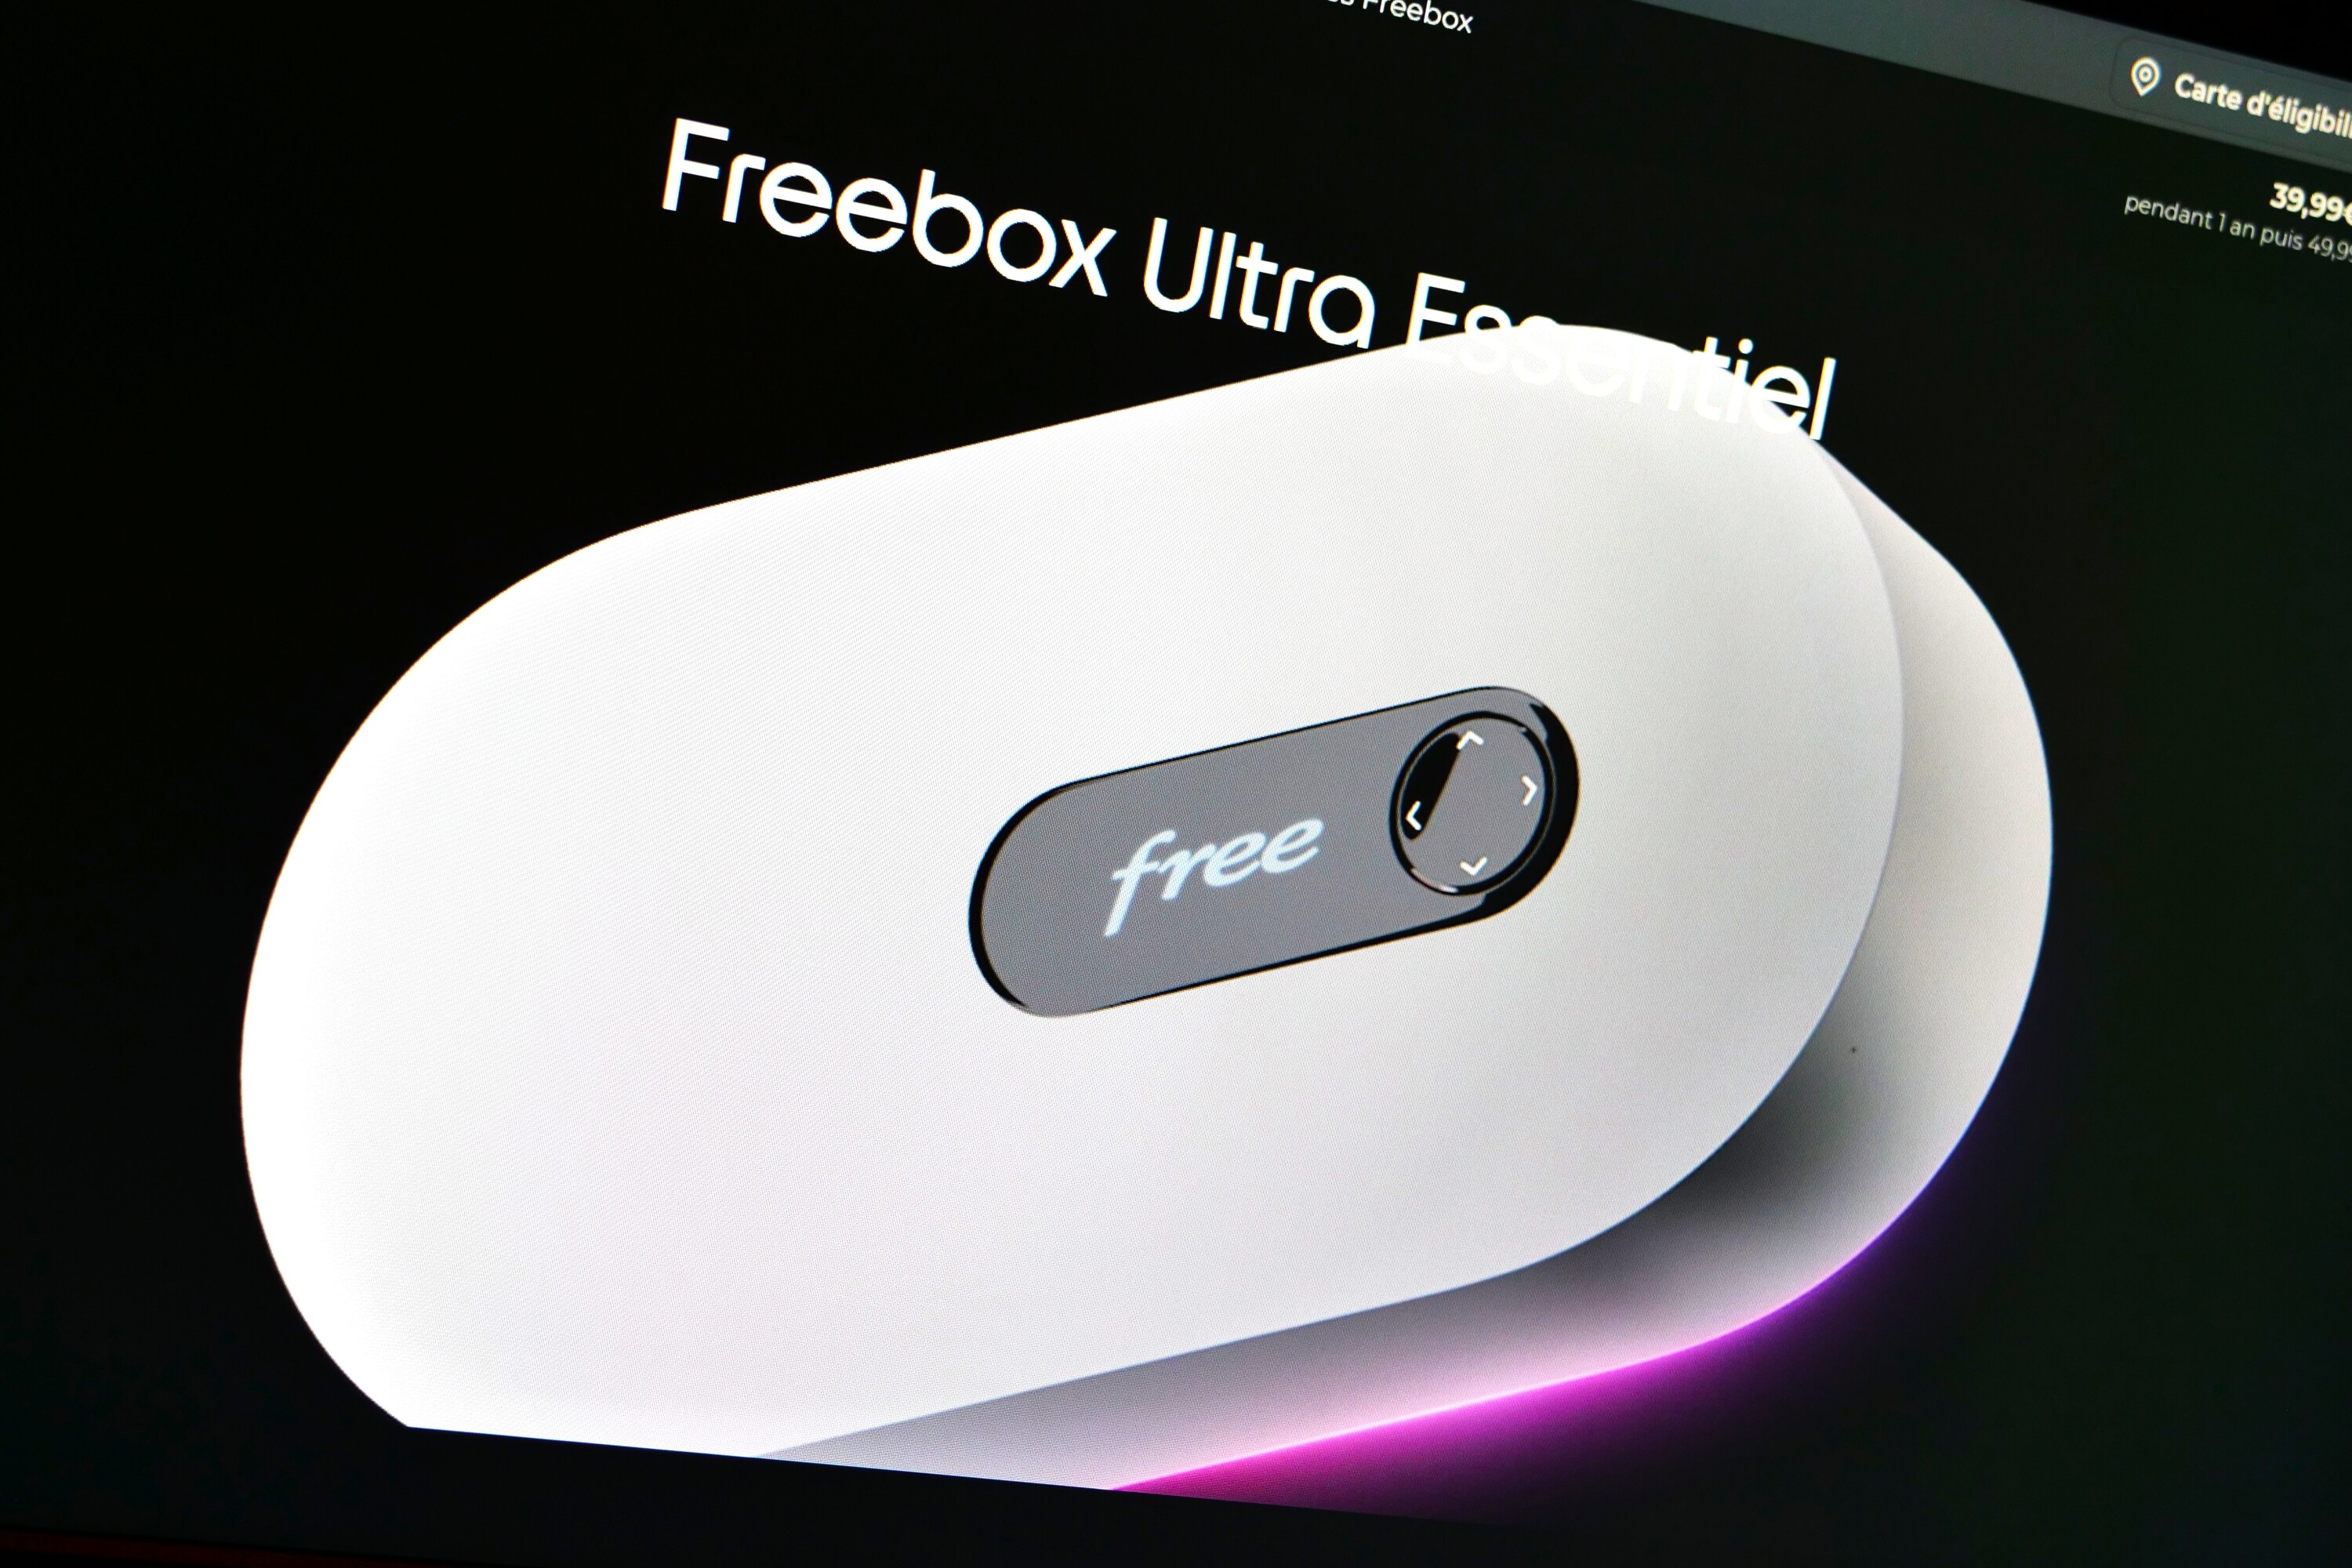 L'offre Freebox Ultra Essentiel accueille le service TV by Canal sans surcoût, de quoi devenir vraiment irrésistible ?